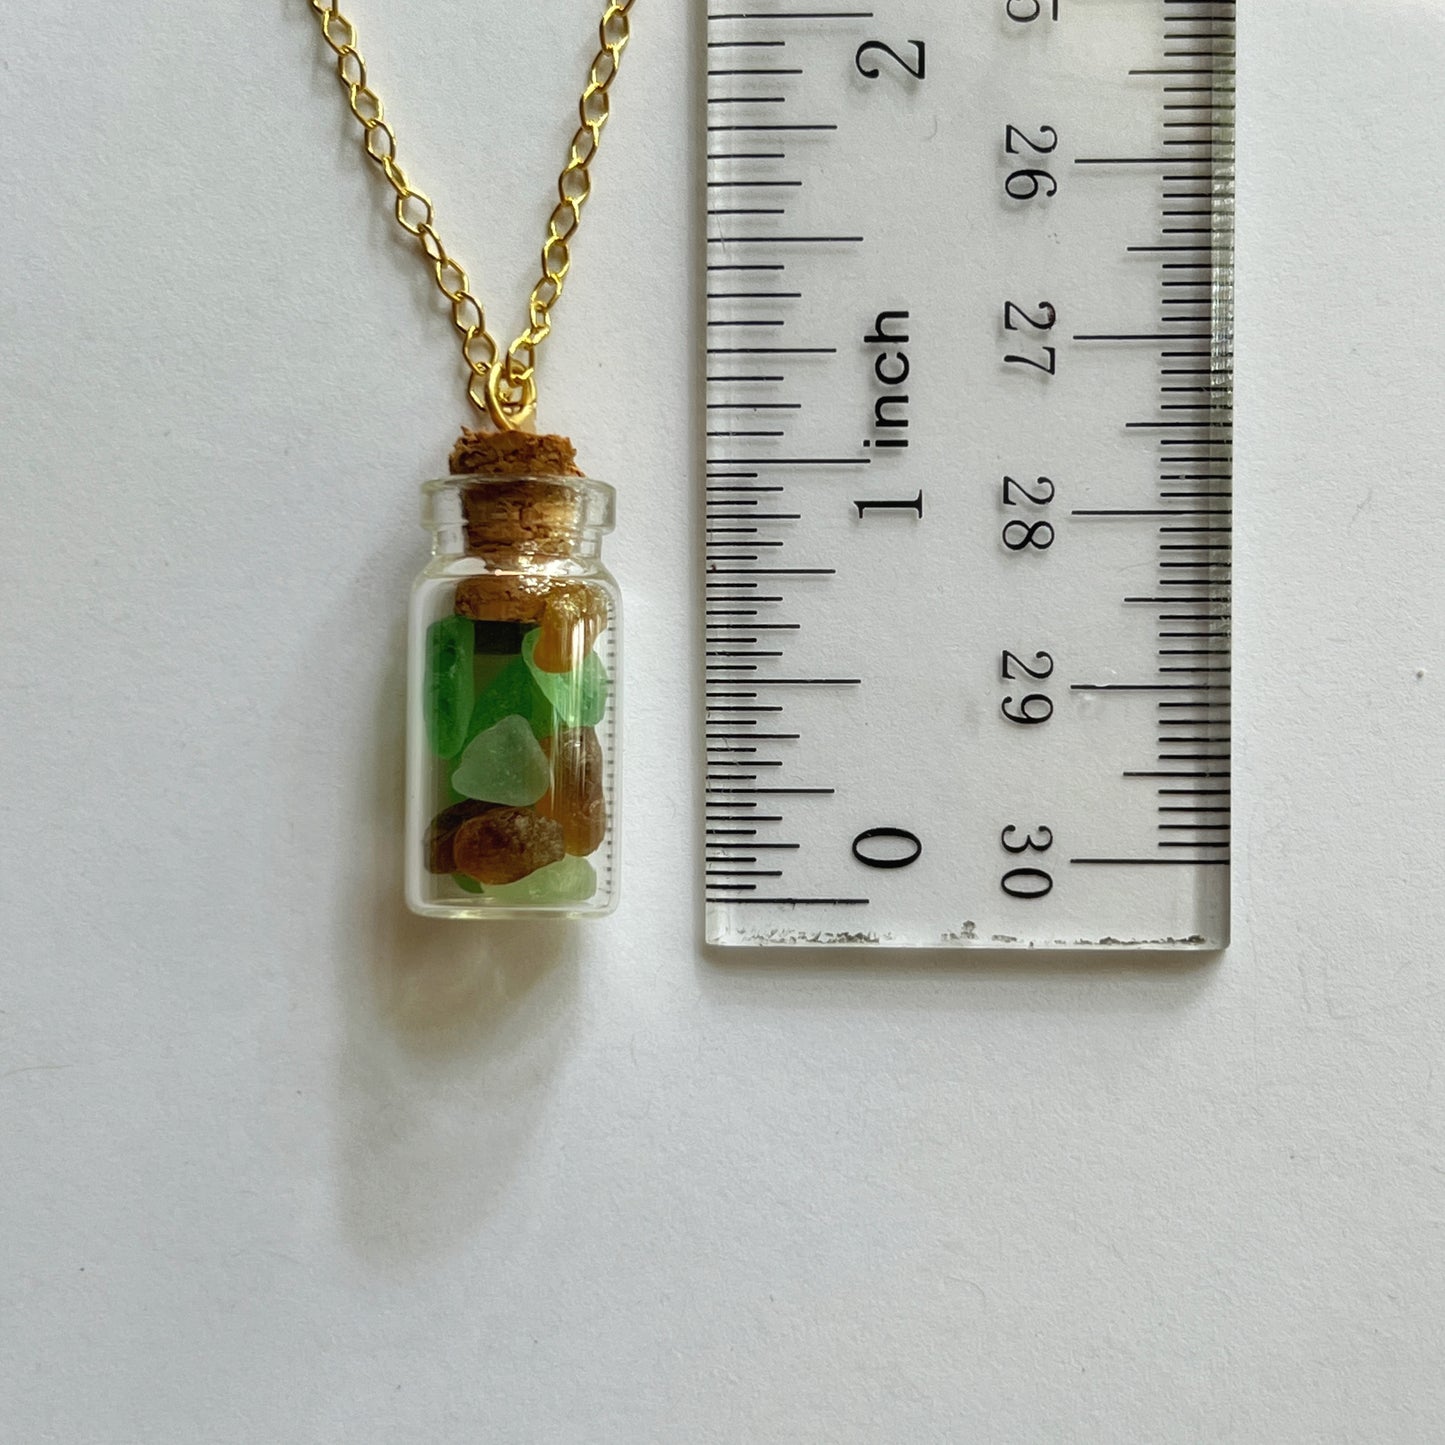 Italian Beach Glass in a Bottle Necklace